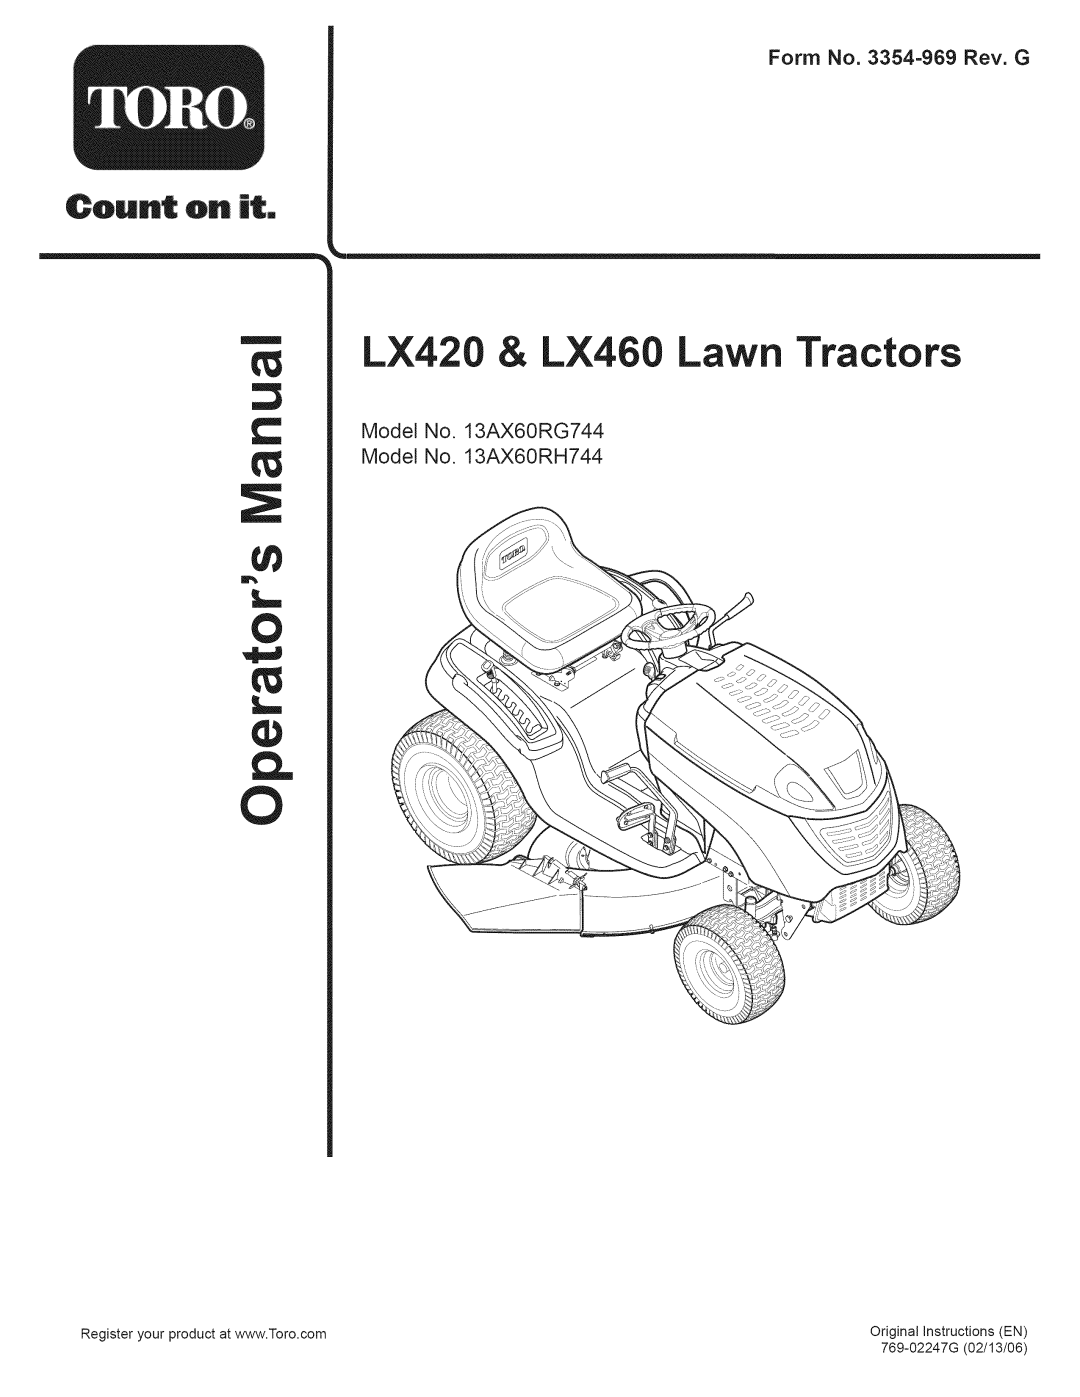 Toro manual LX420 & LX460 Lawn Tractors, Form No. 3354=969 Rev. G, Model No. 13AX60RG744 Model No. 13AX60RH744 